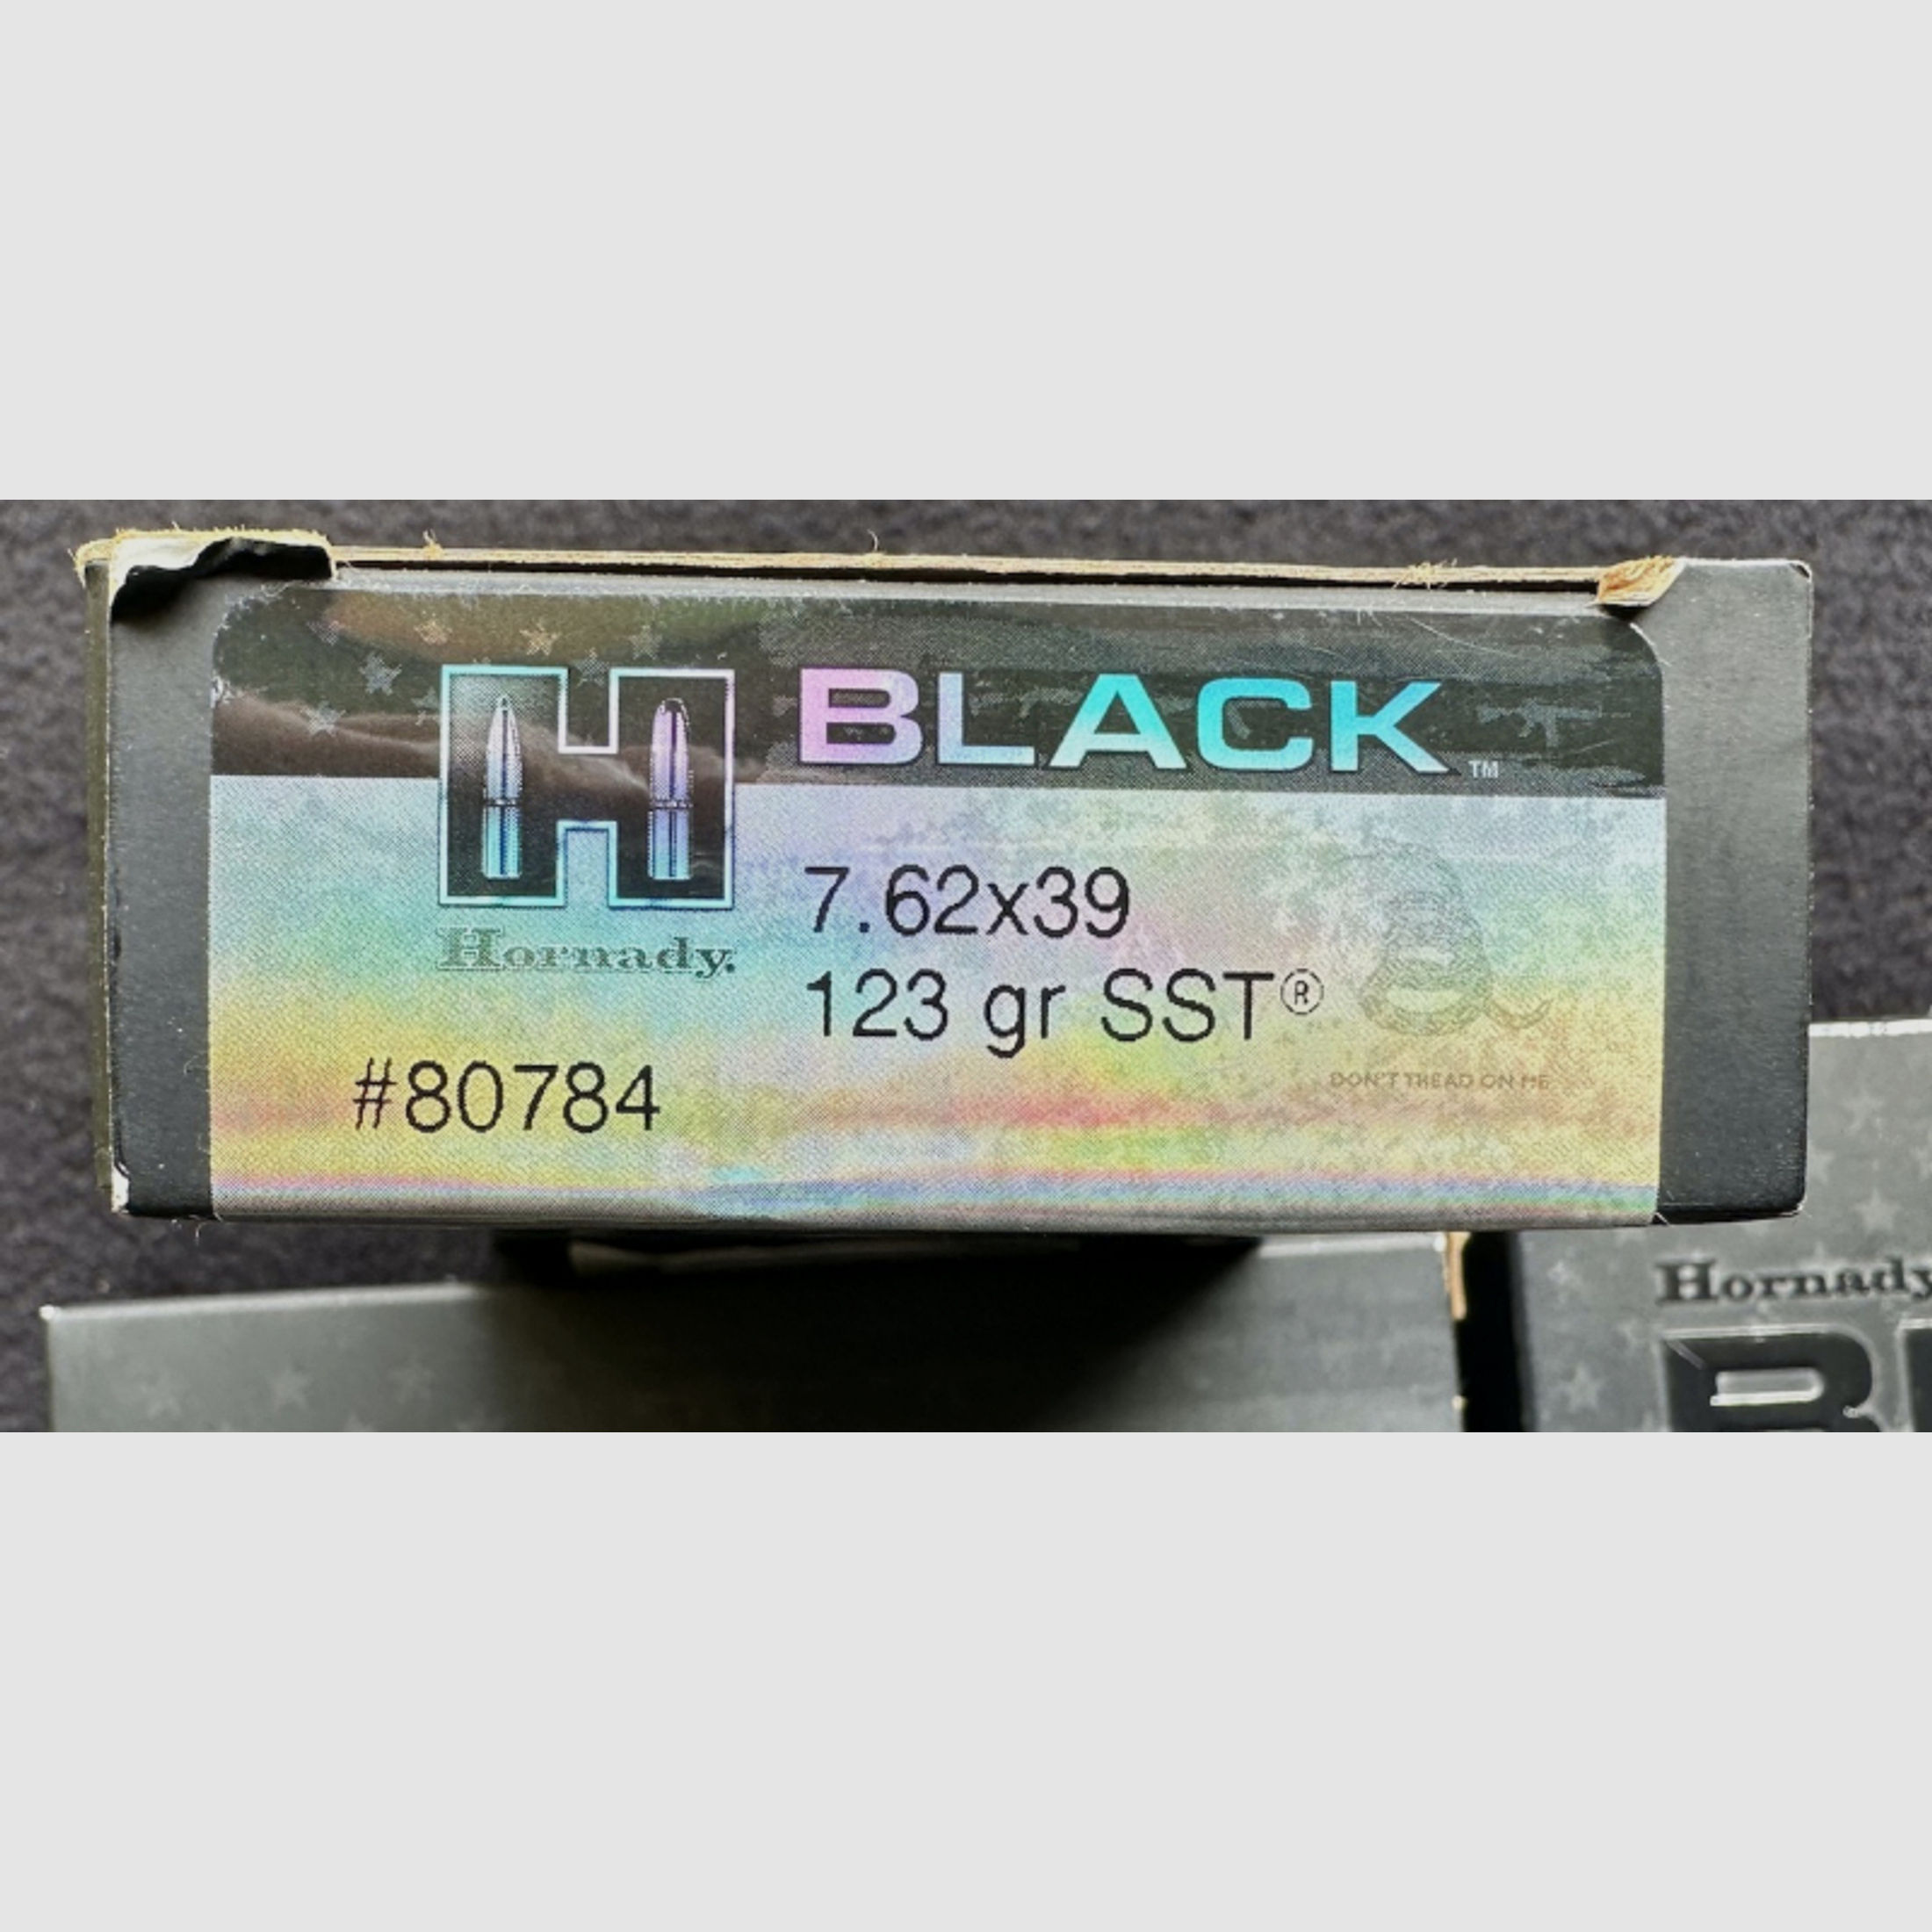 70 Patronen Hornady Black - 7,62x39 - SST - 123 gn. - 8,0g - 80784